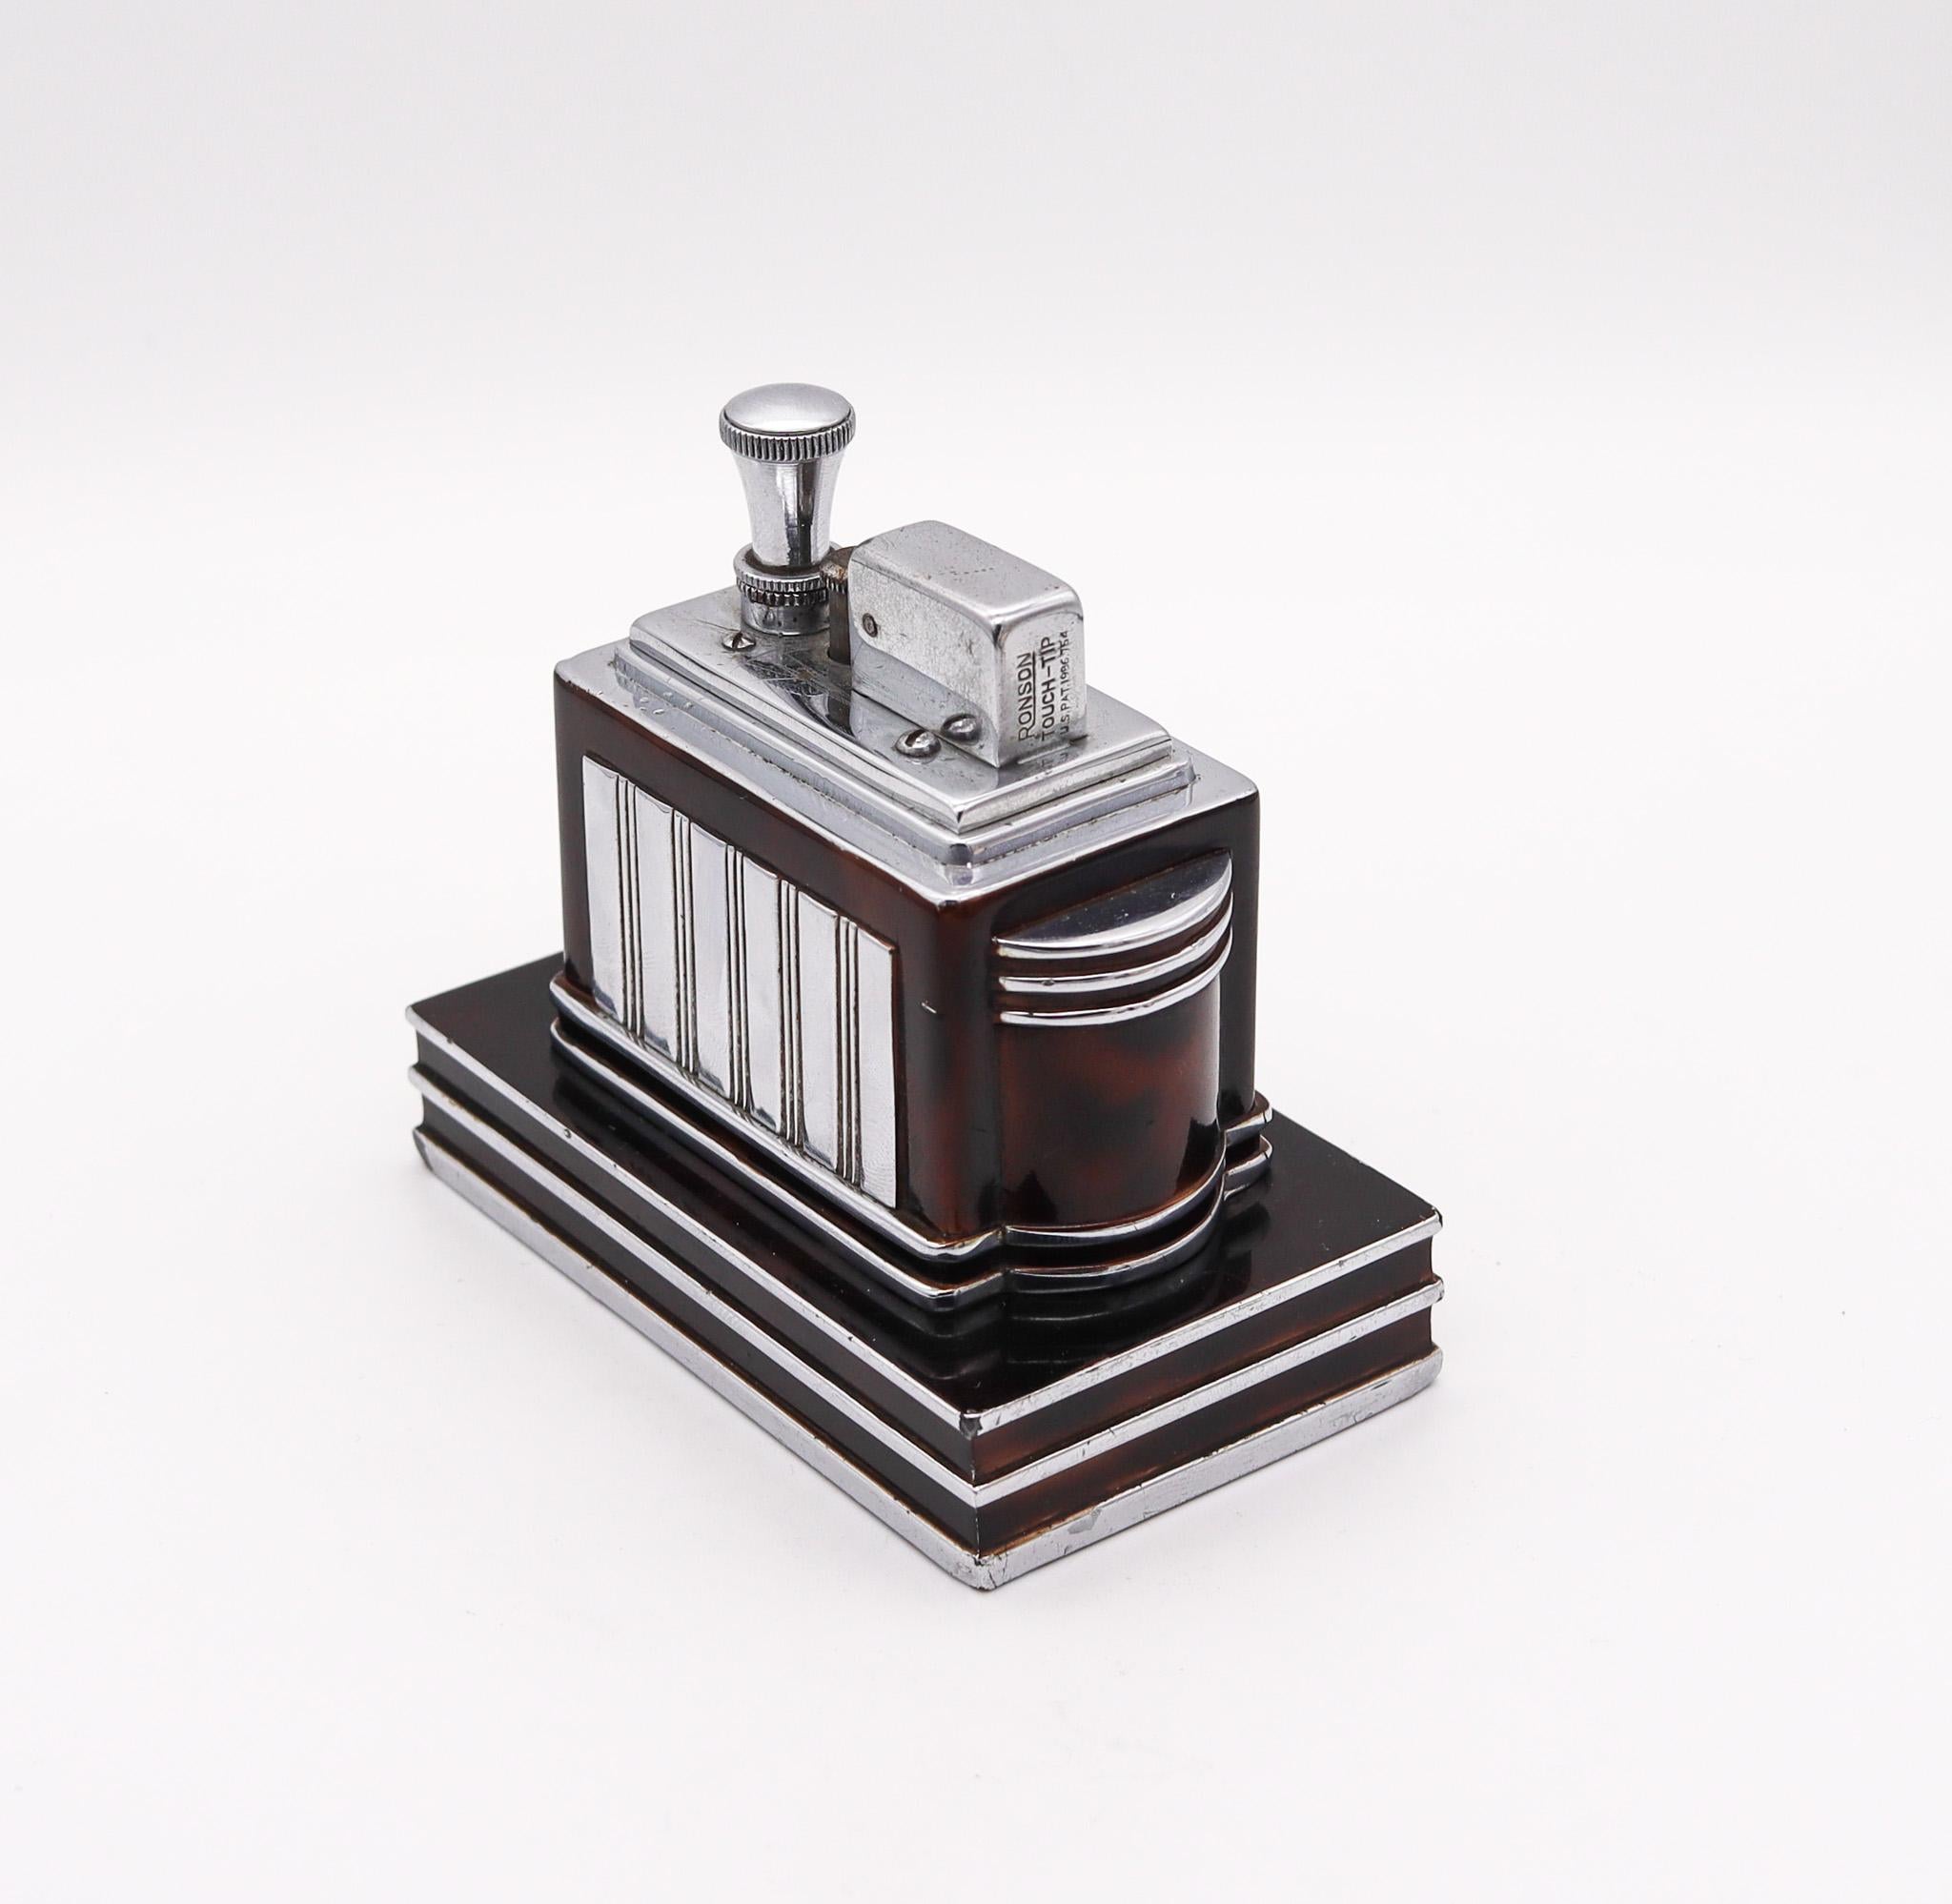 Ein von Ronson entworfenes Deluxe-Schreibtischfeuerzeug.

Dieses äußerst seltene Ronson Deluxe Classic Touch-Tip Feuerzeug wurde 1938 von der Ronson Art Metal Works Inc. in Newark, New Jersey in den Vereinigten Staaten hergestellt. Mit diesem